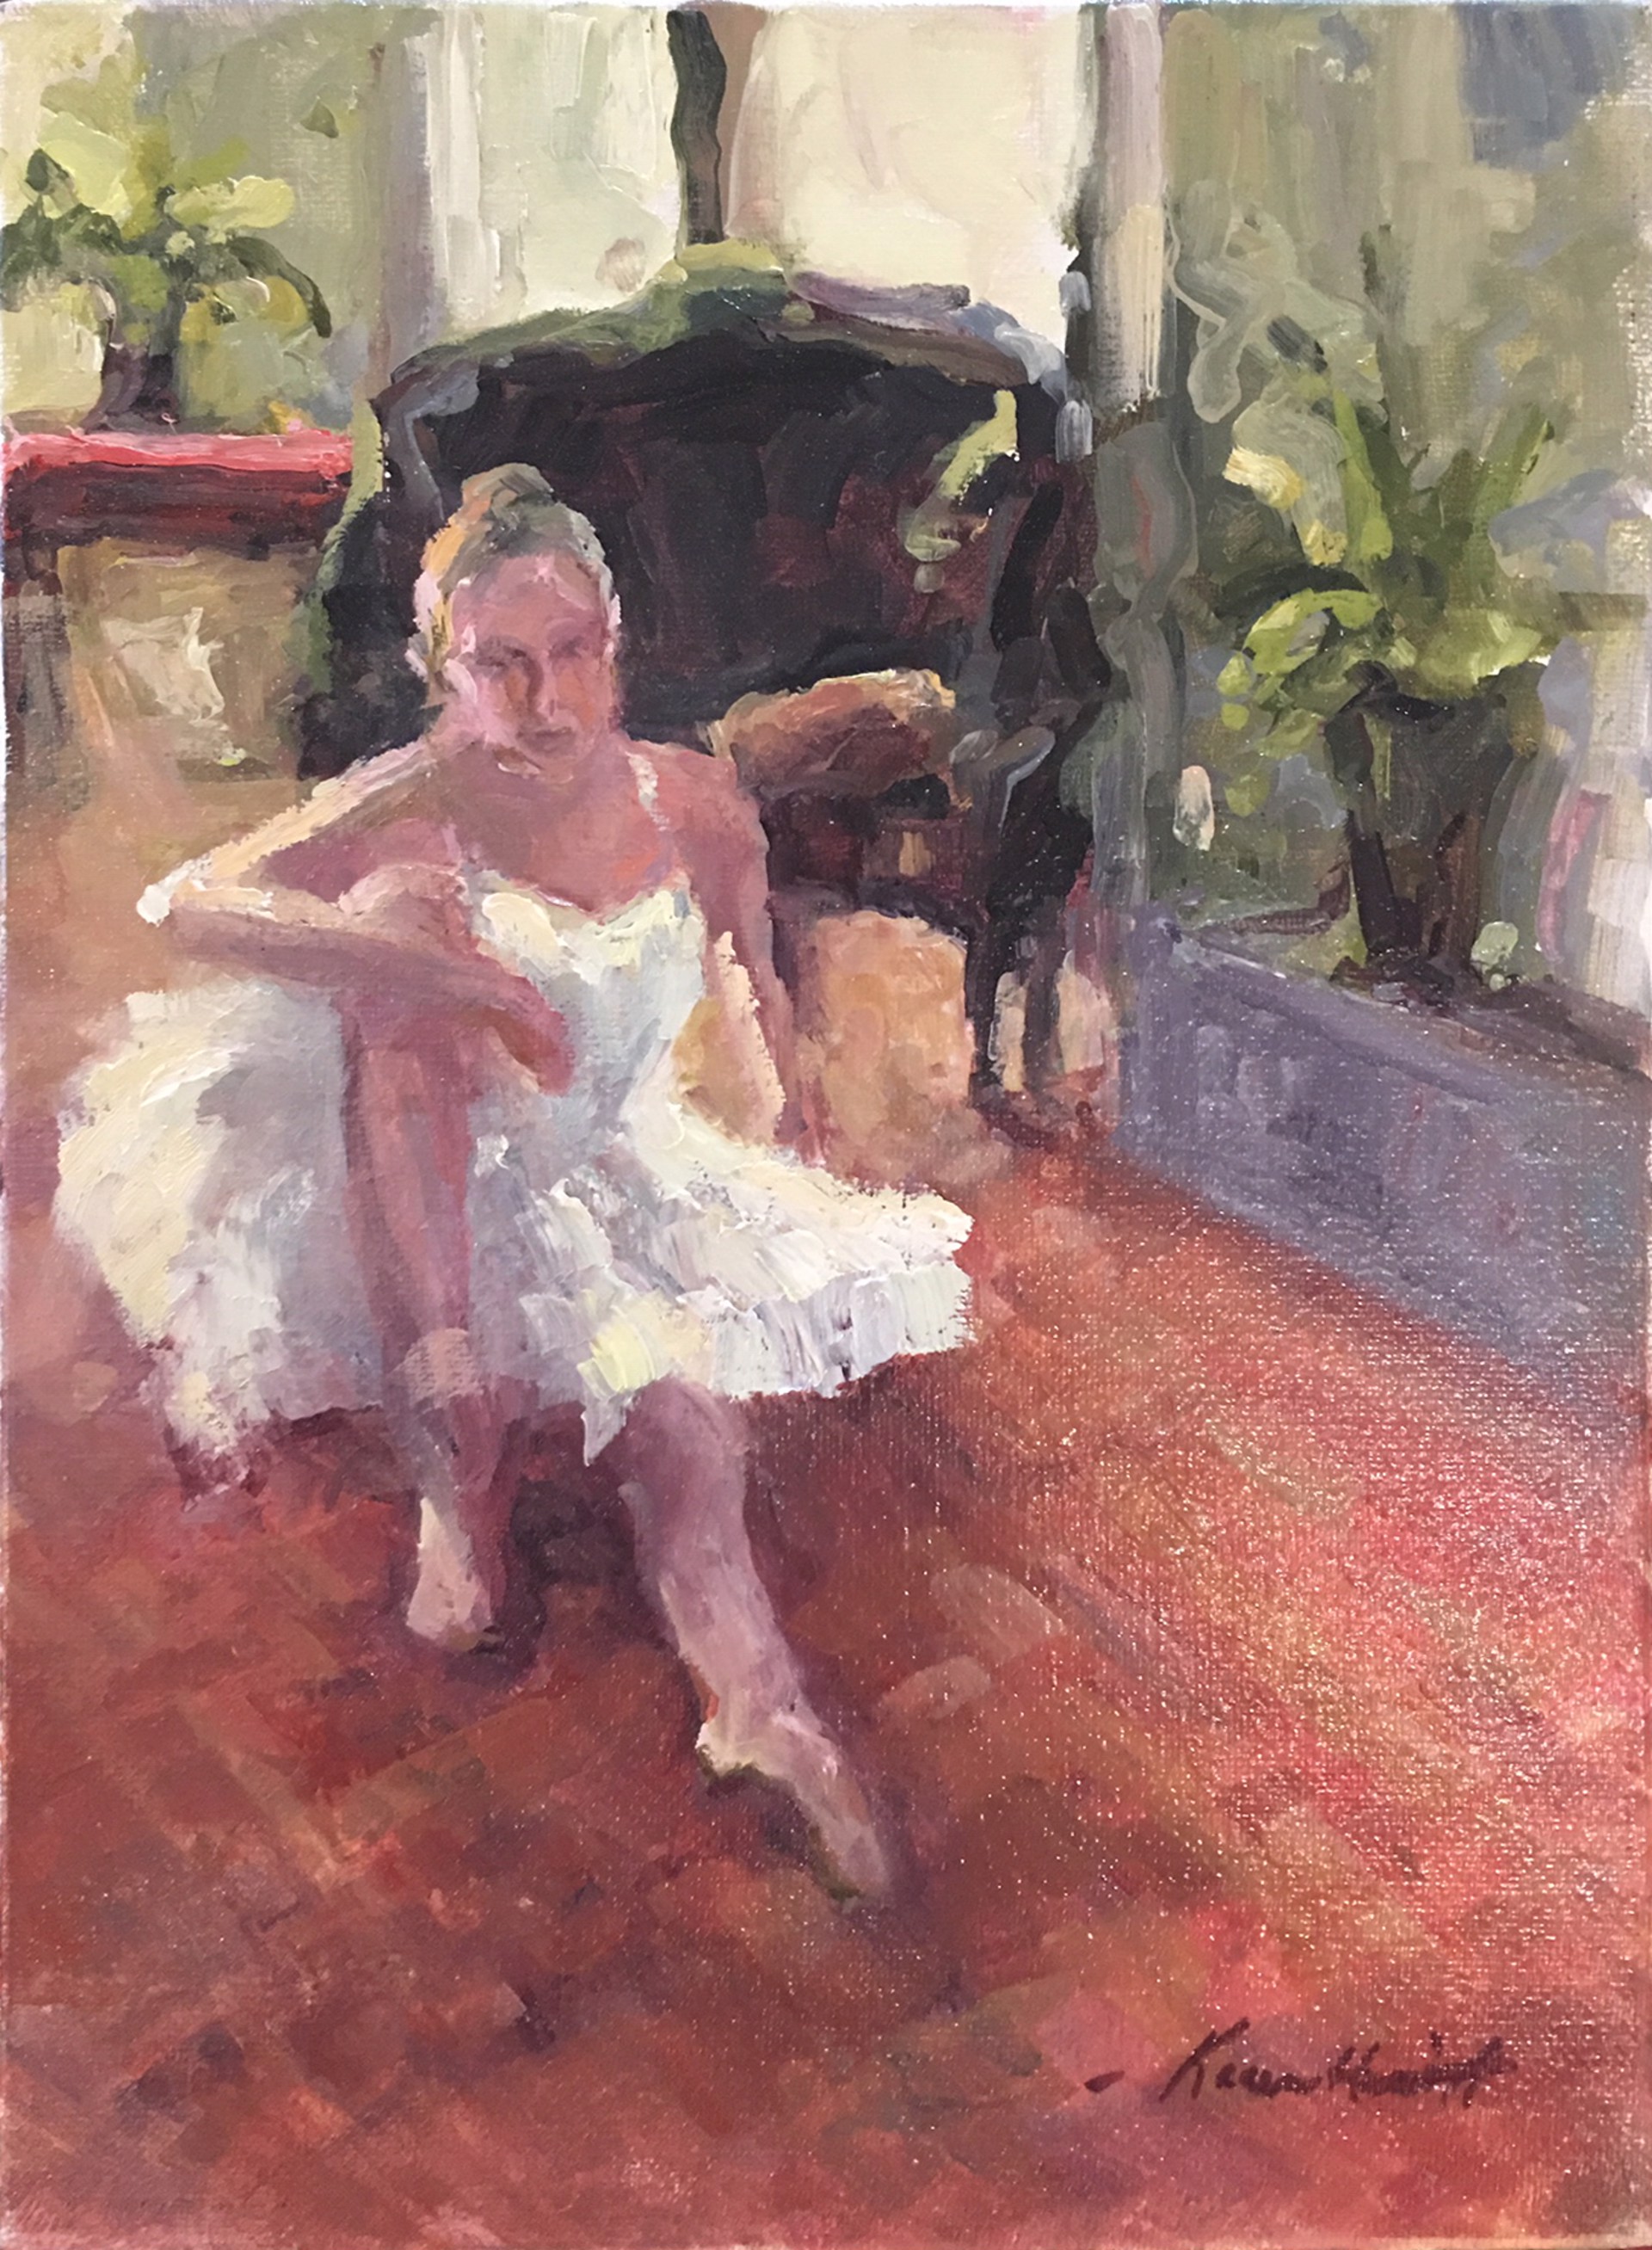 Dancer in Sunlight by Karen Hewitt Hagan